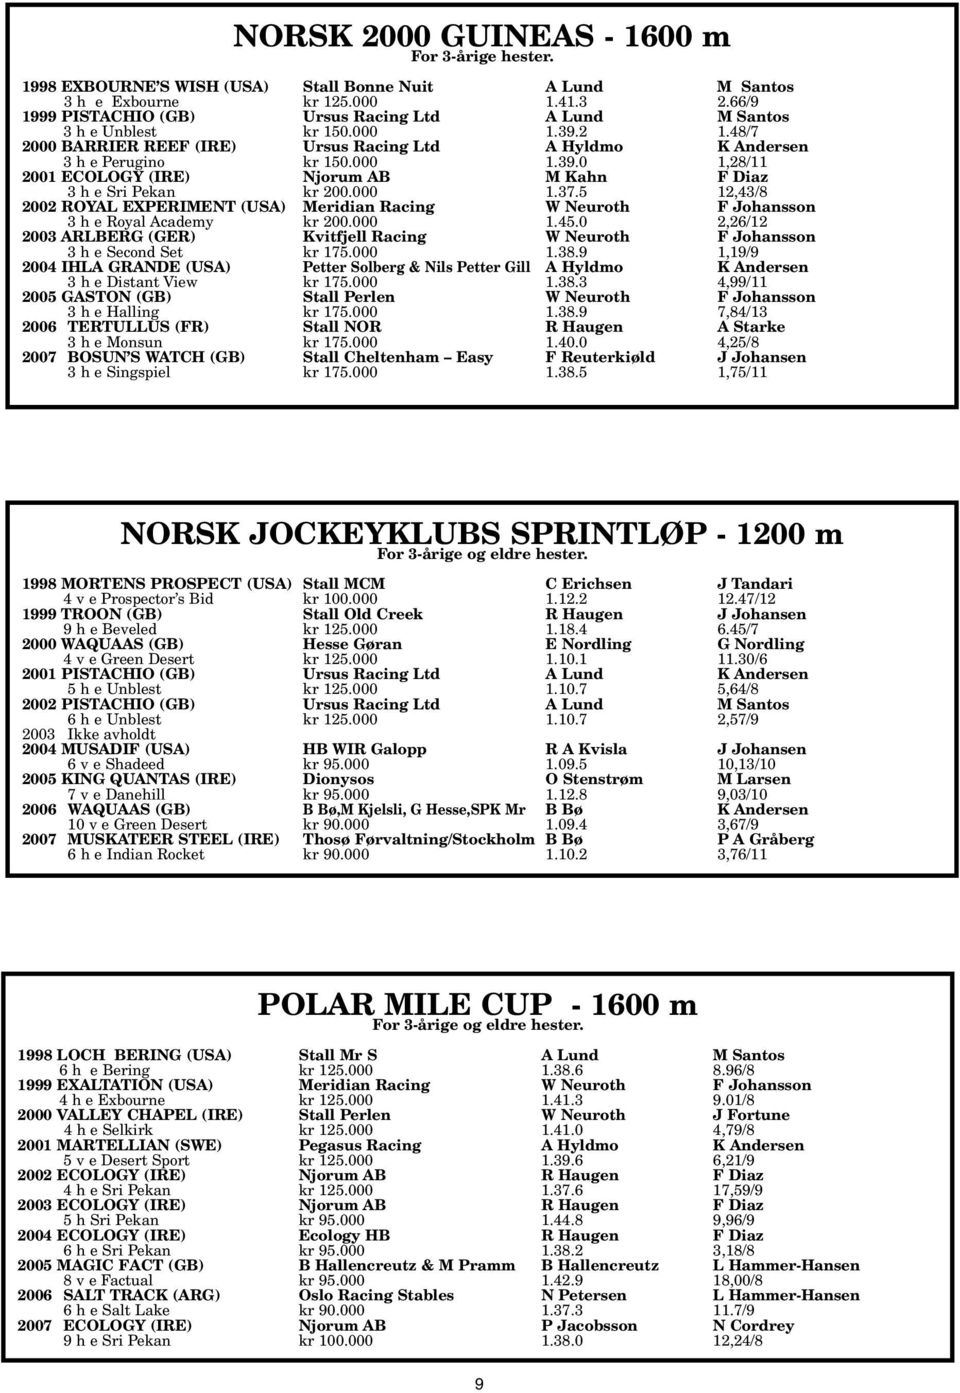 000 1.37.5 12,43/8 2002 ROYAL EXPERIMENT (USA) Meridian Racing W Neuroth F Johansson 3 h e Royal Academy kr 200.000 1.45.